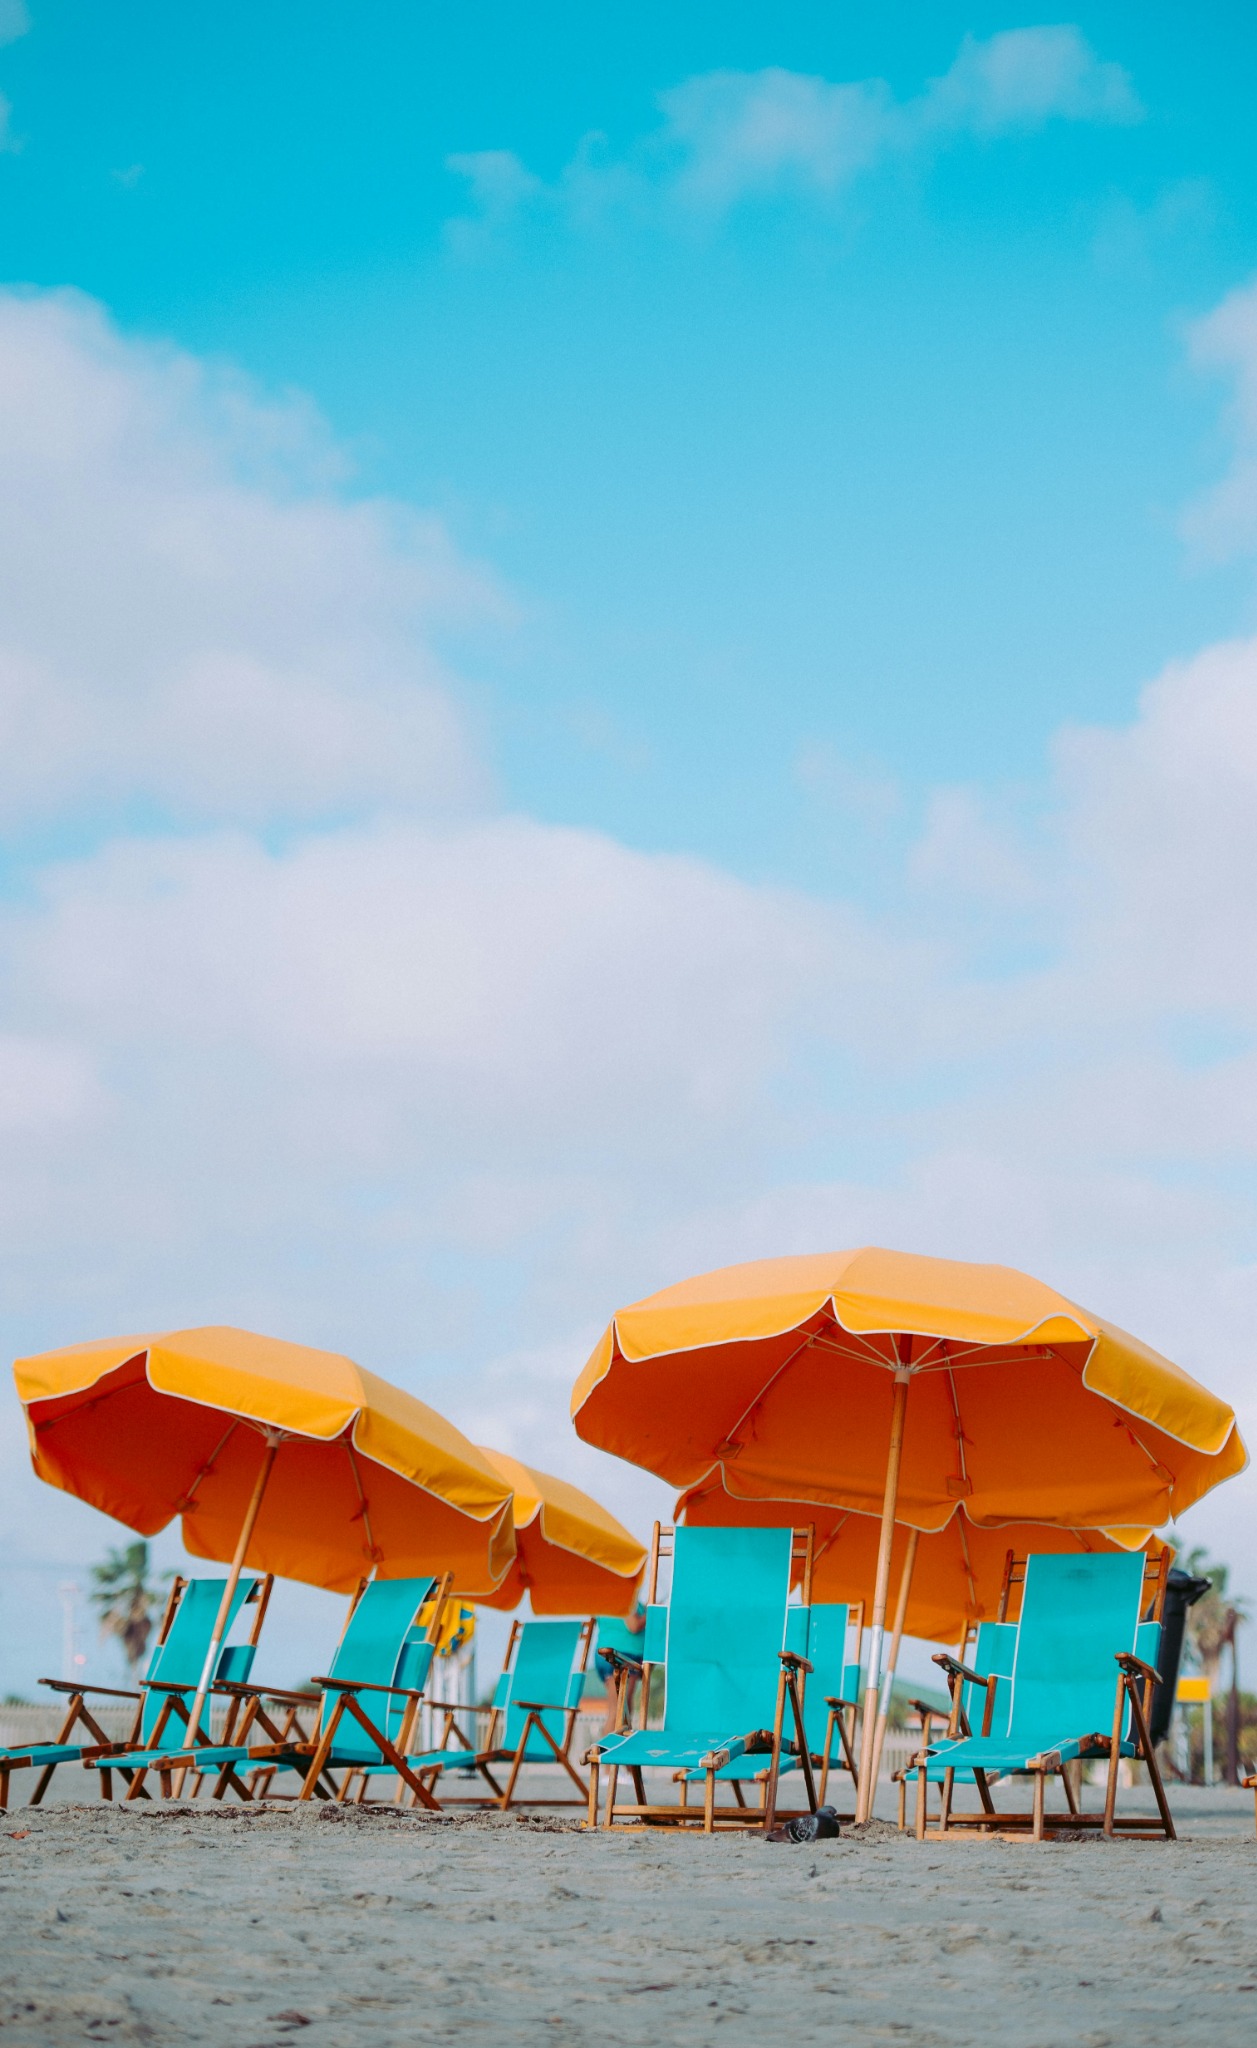 Beach chairs under orange umbrellas